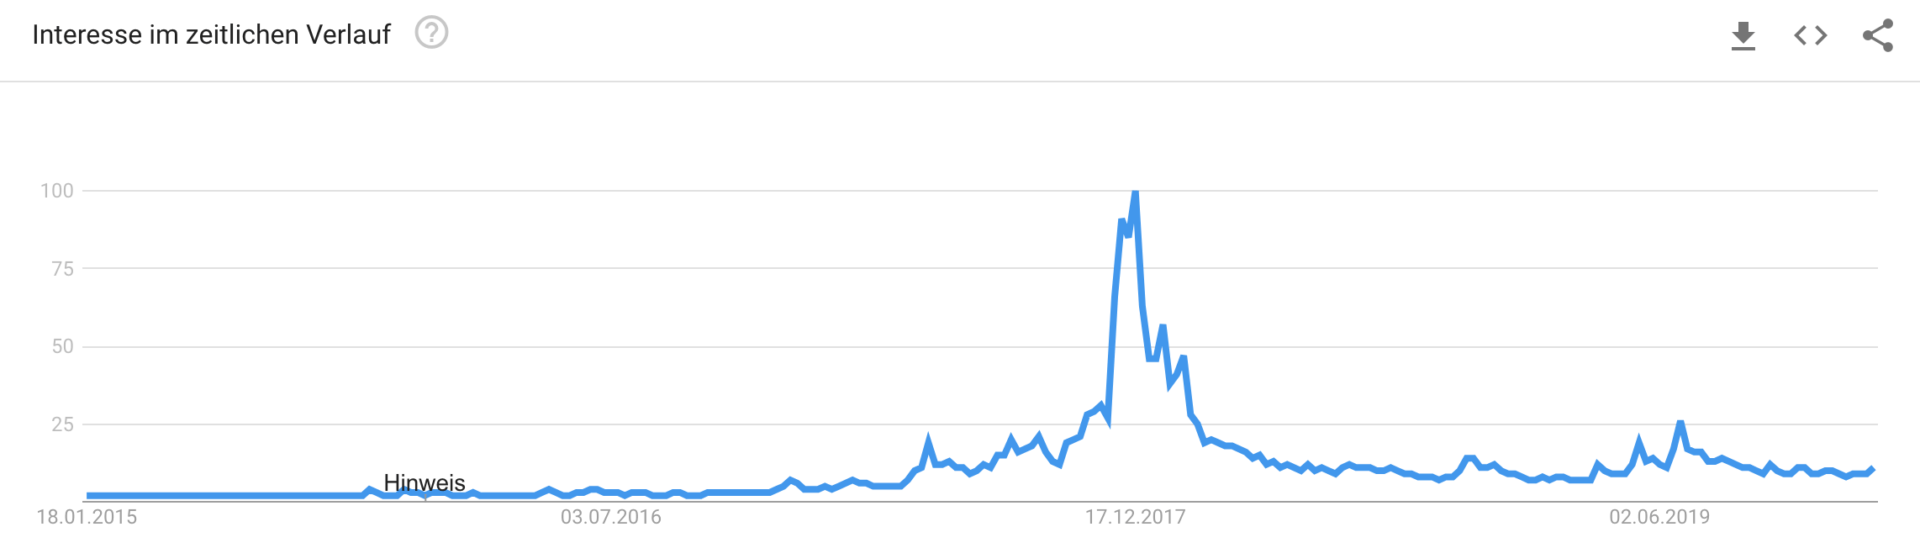 Гугл тренд биткоина обмен валют москва цене